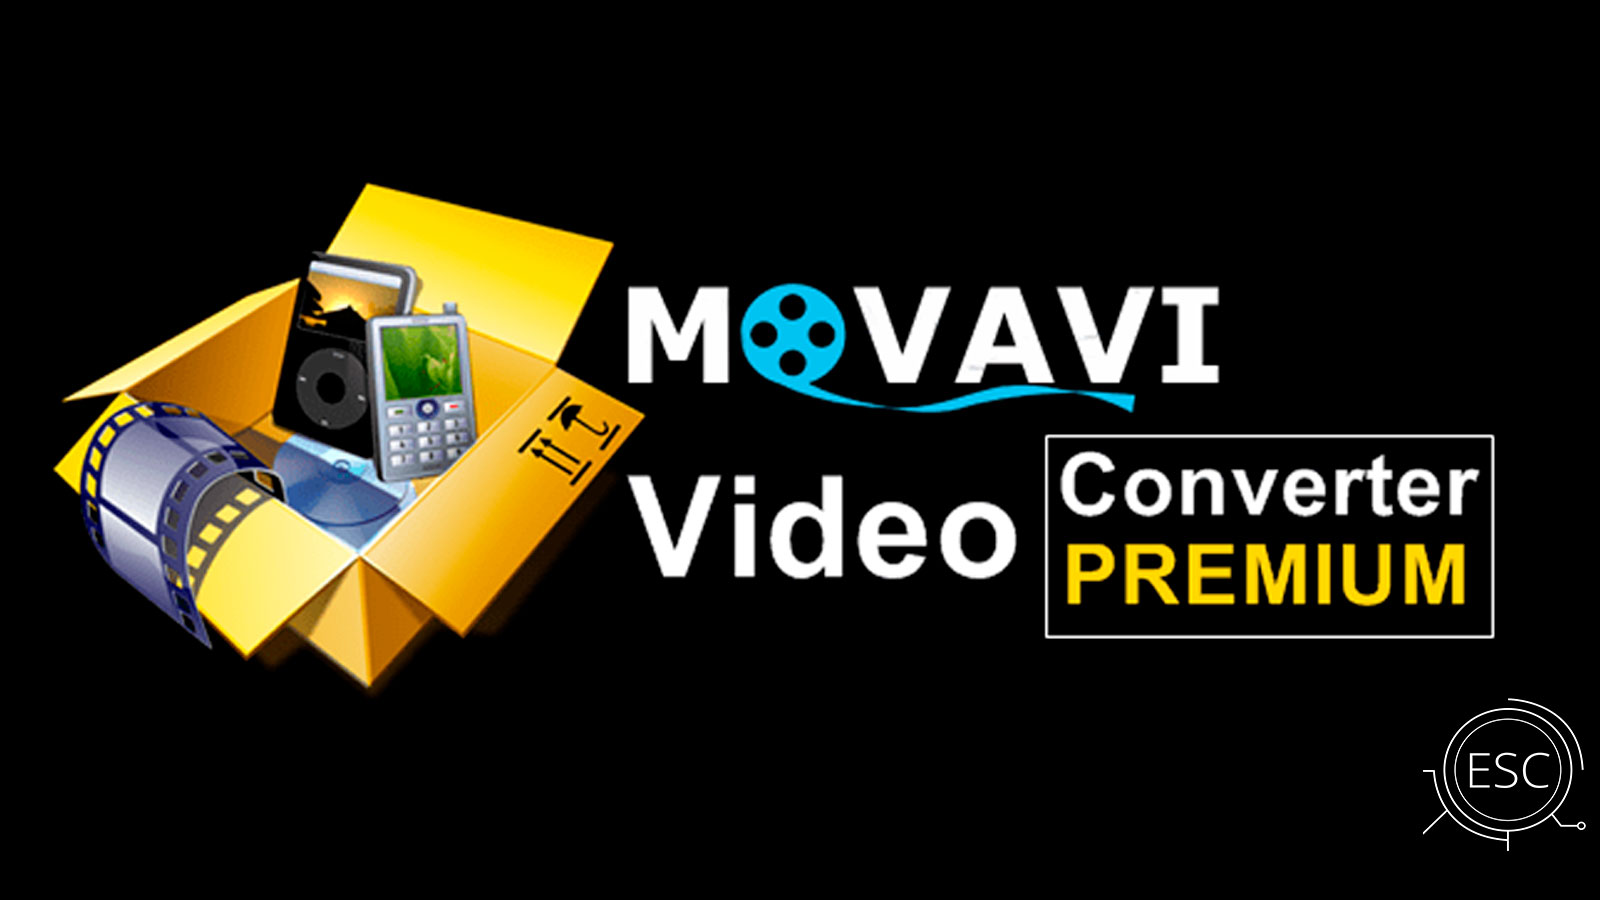 Обзор на программу Movavi Video Converter